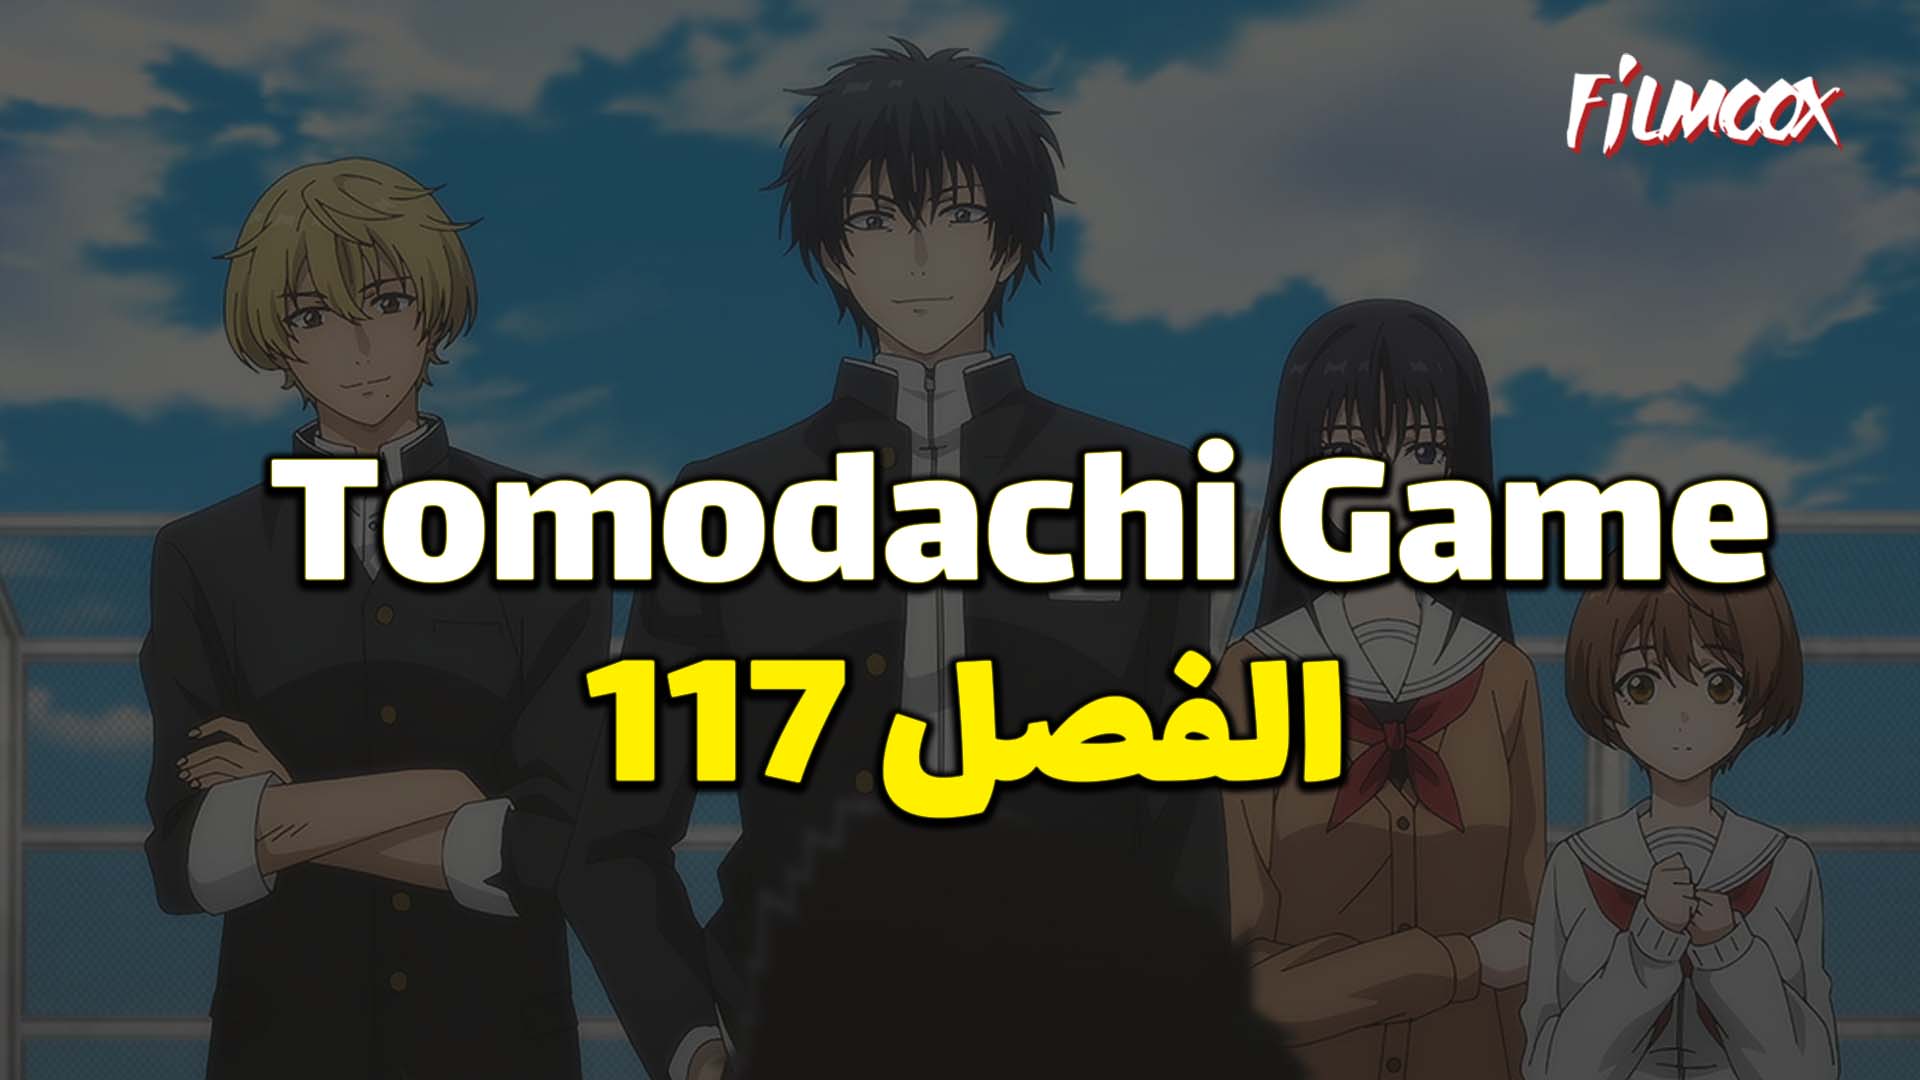 مانجا Tomodachi Game الفصل 117 مترجم - filmoox